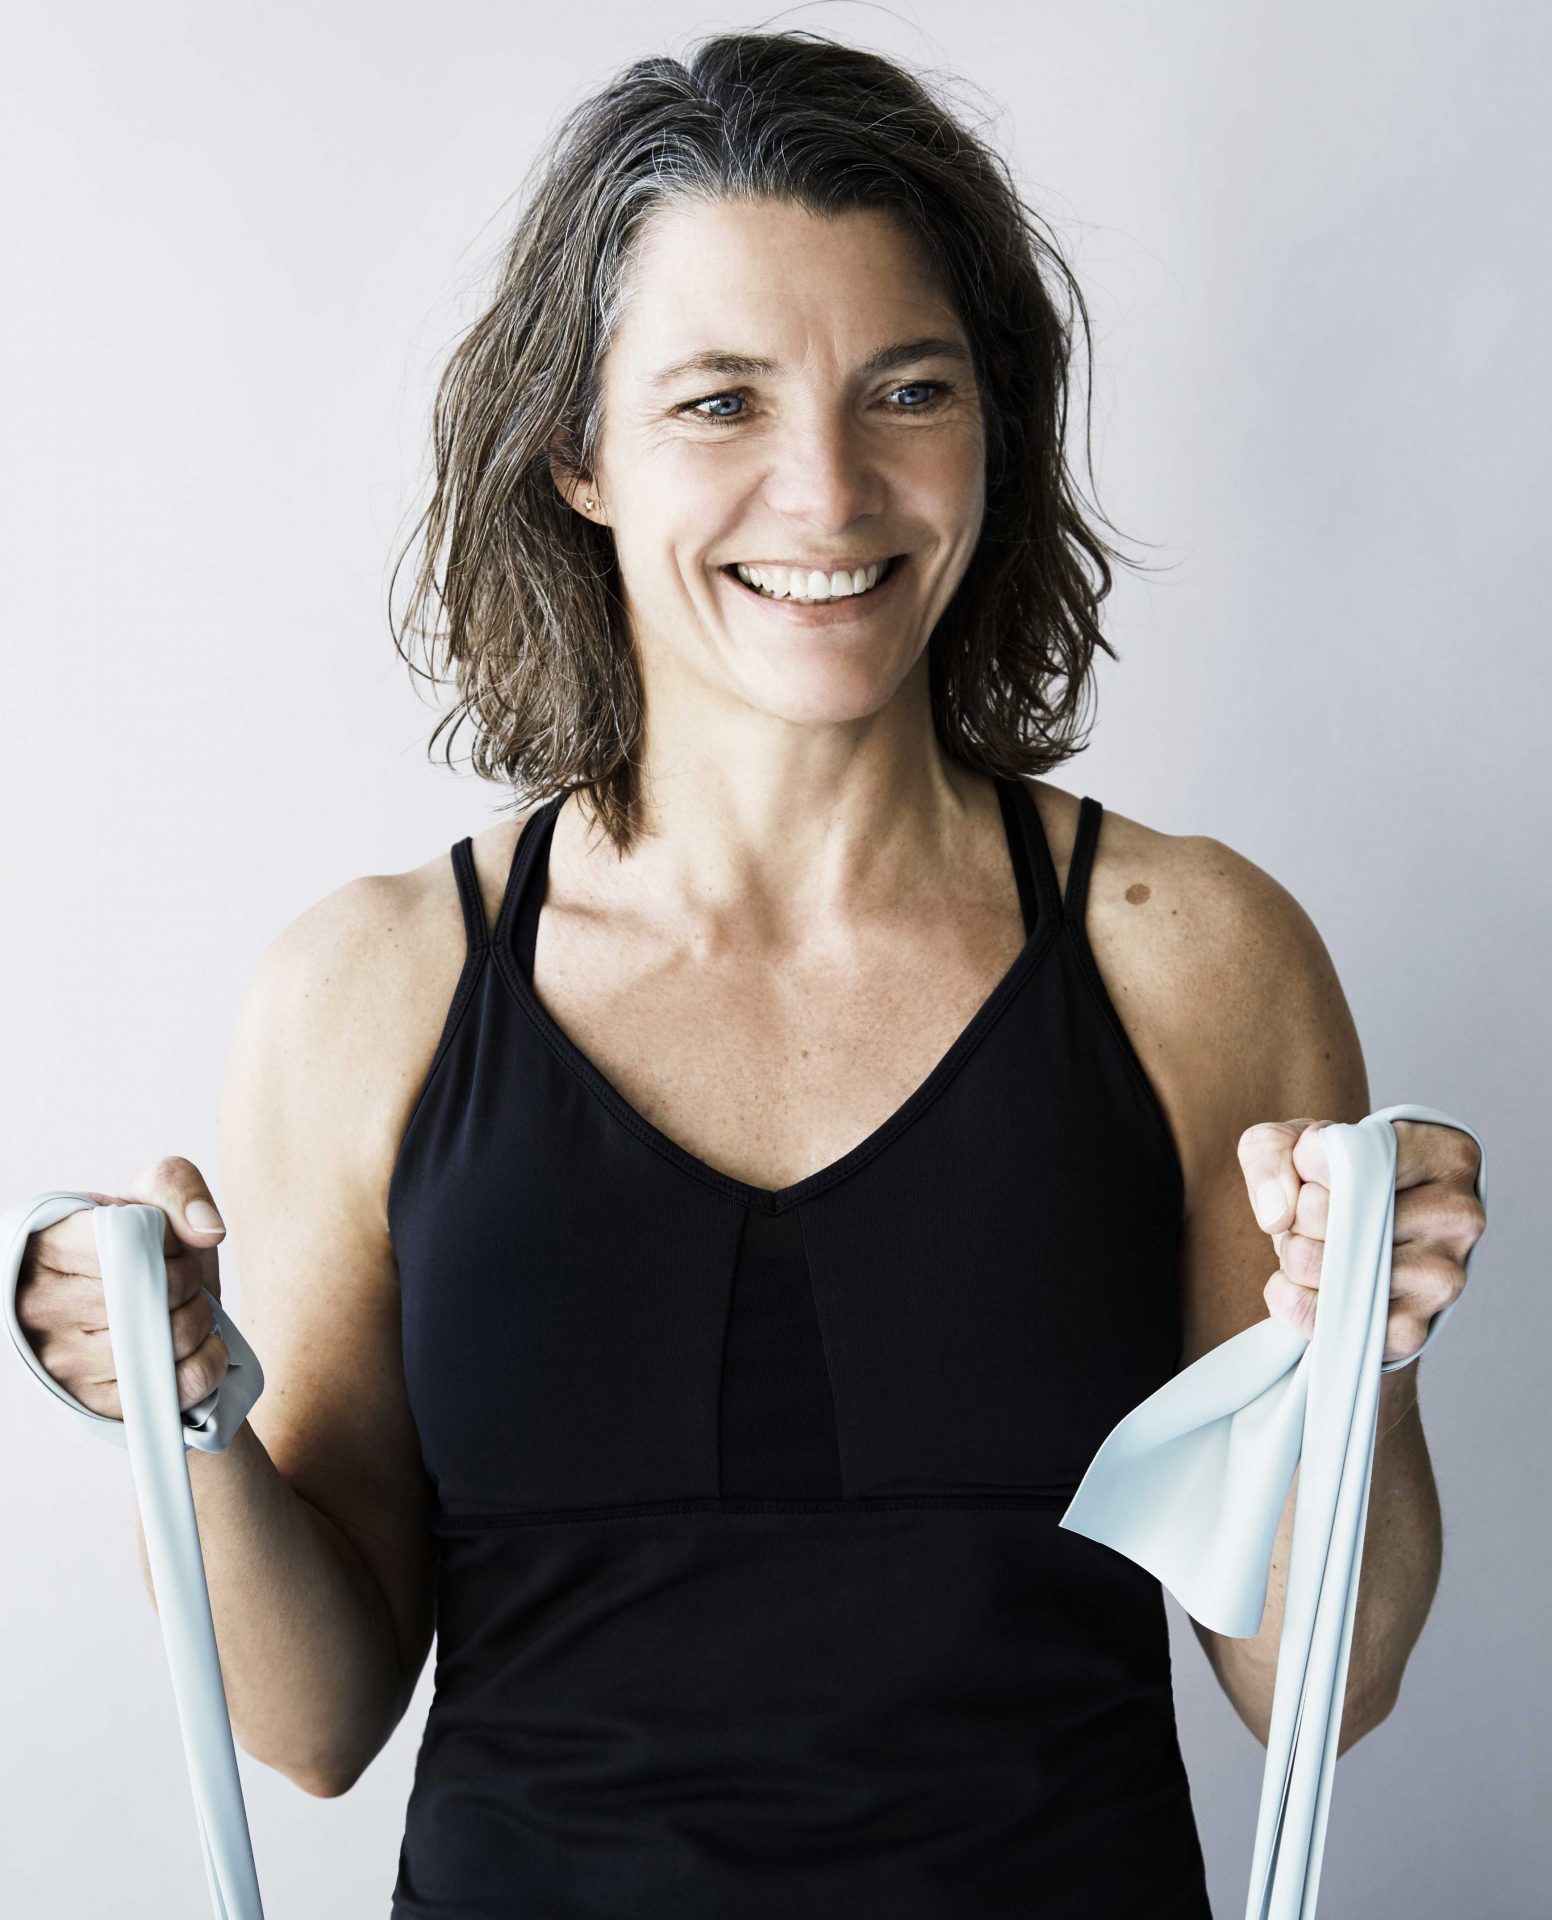 Heidi - Uddannet fysioterapeut - 25 års erfaring som idrætsinstruktør.